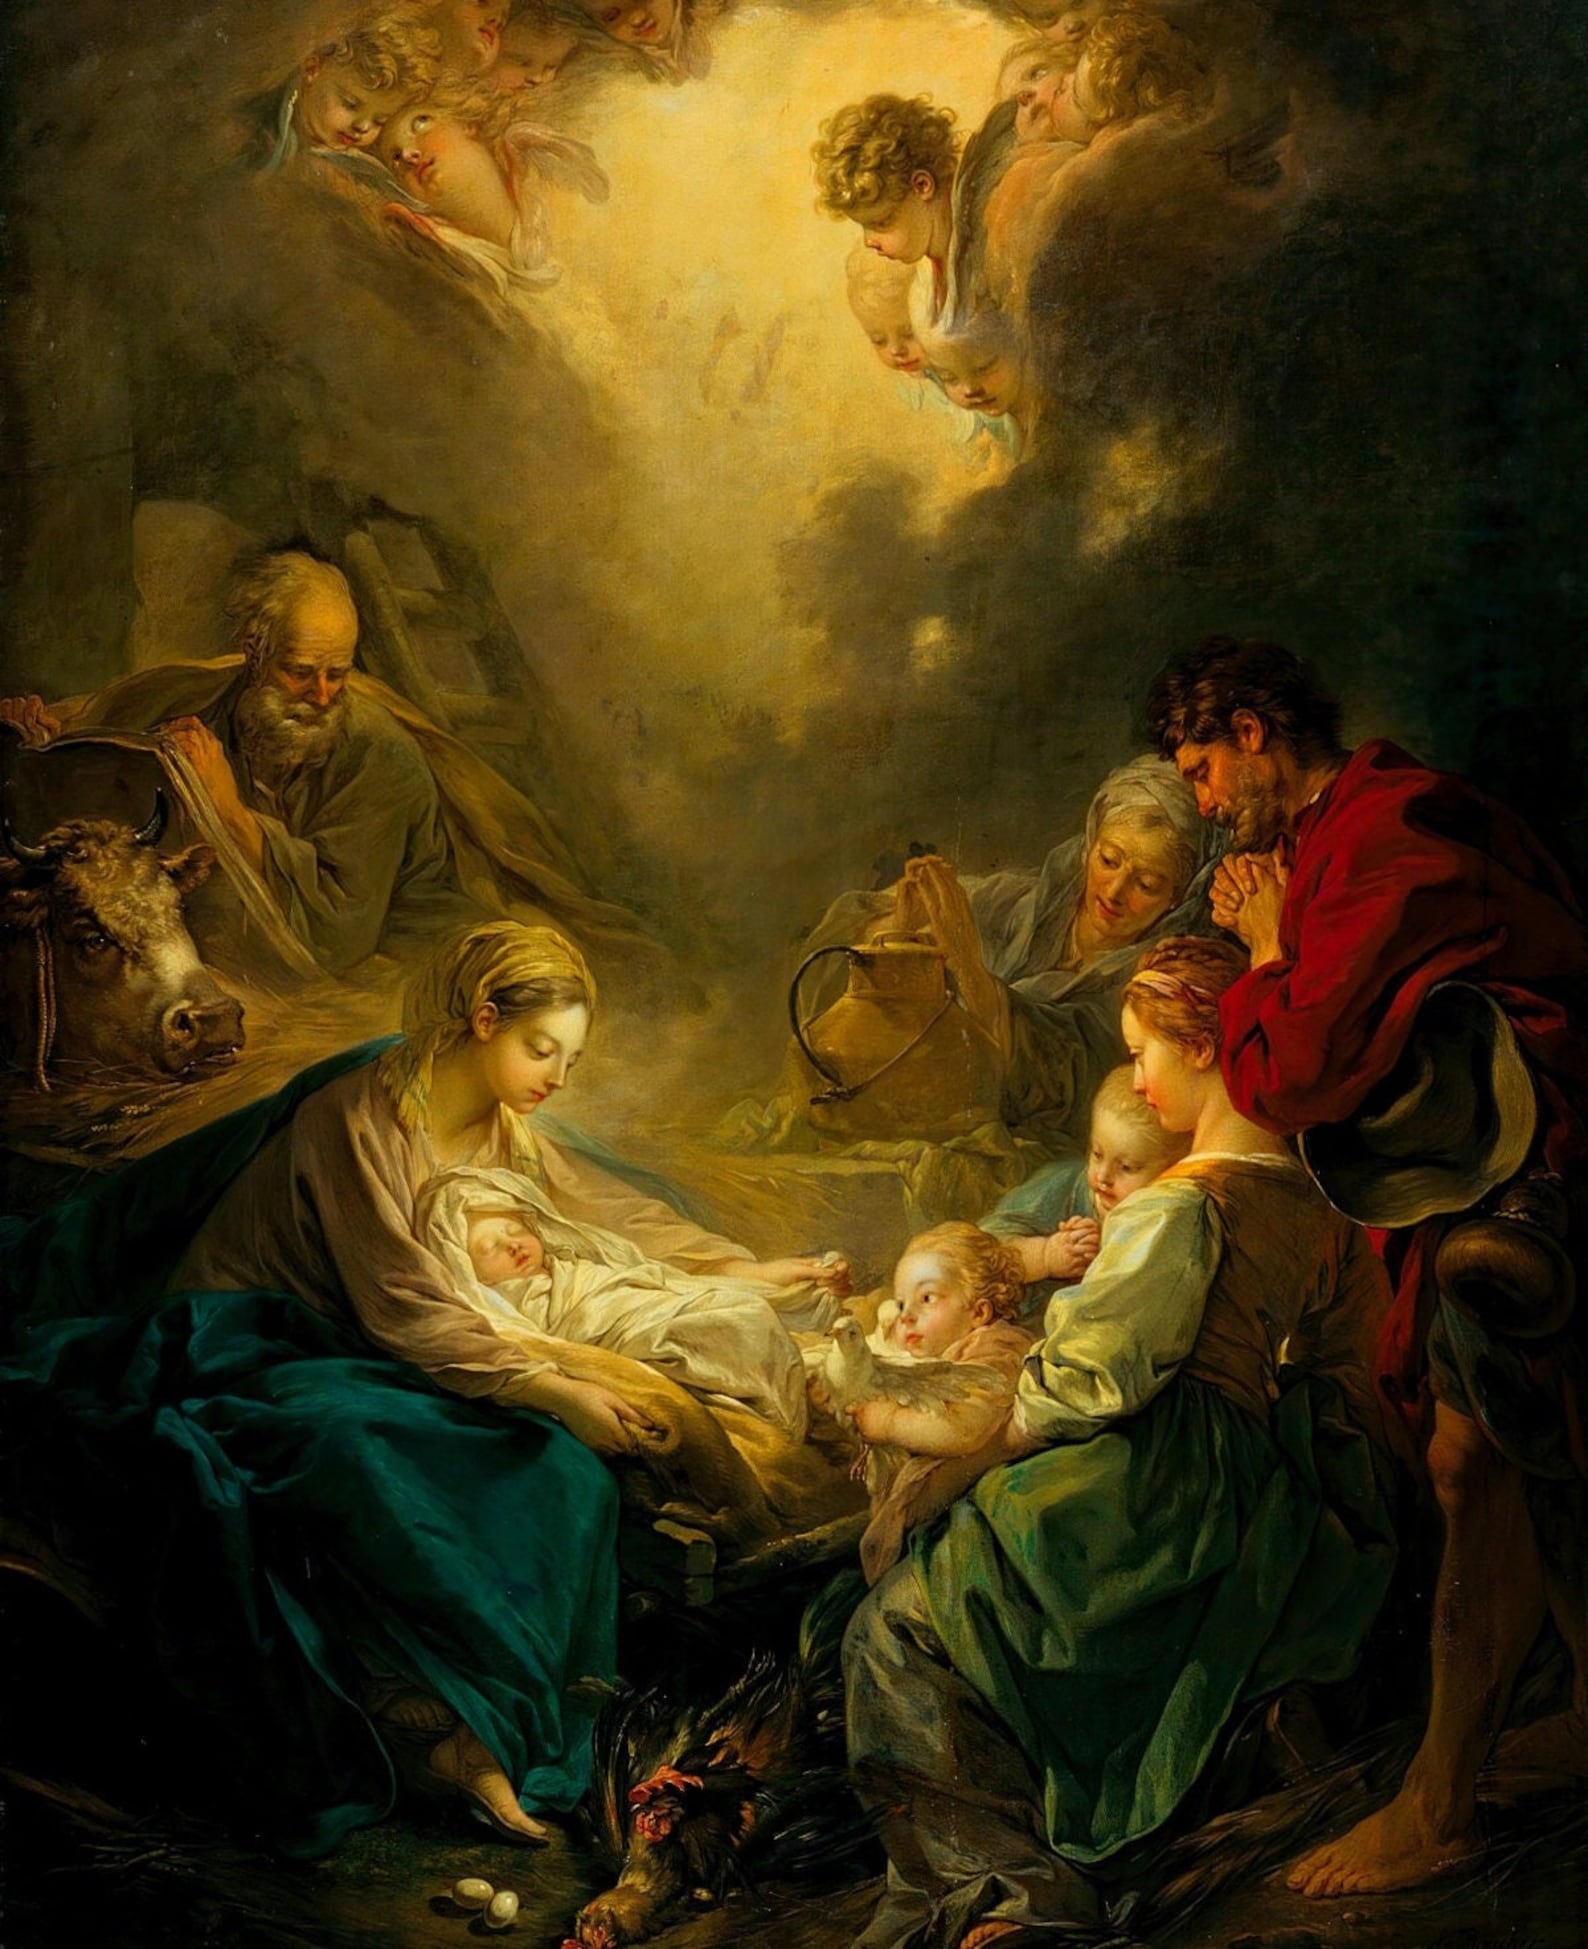 Nativity scene painting